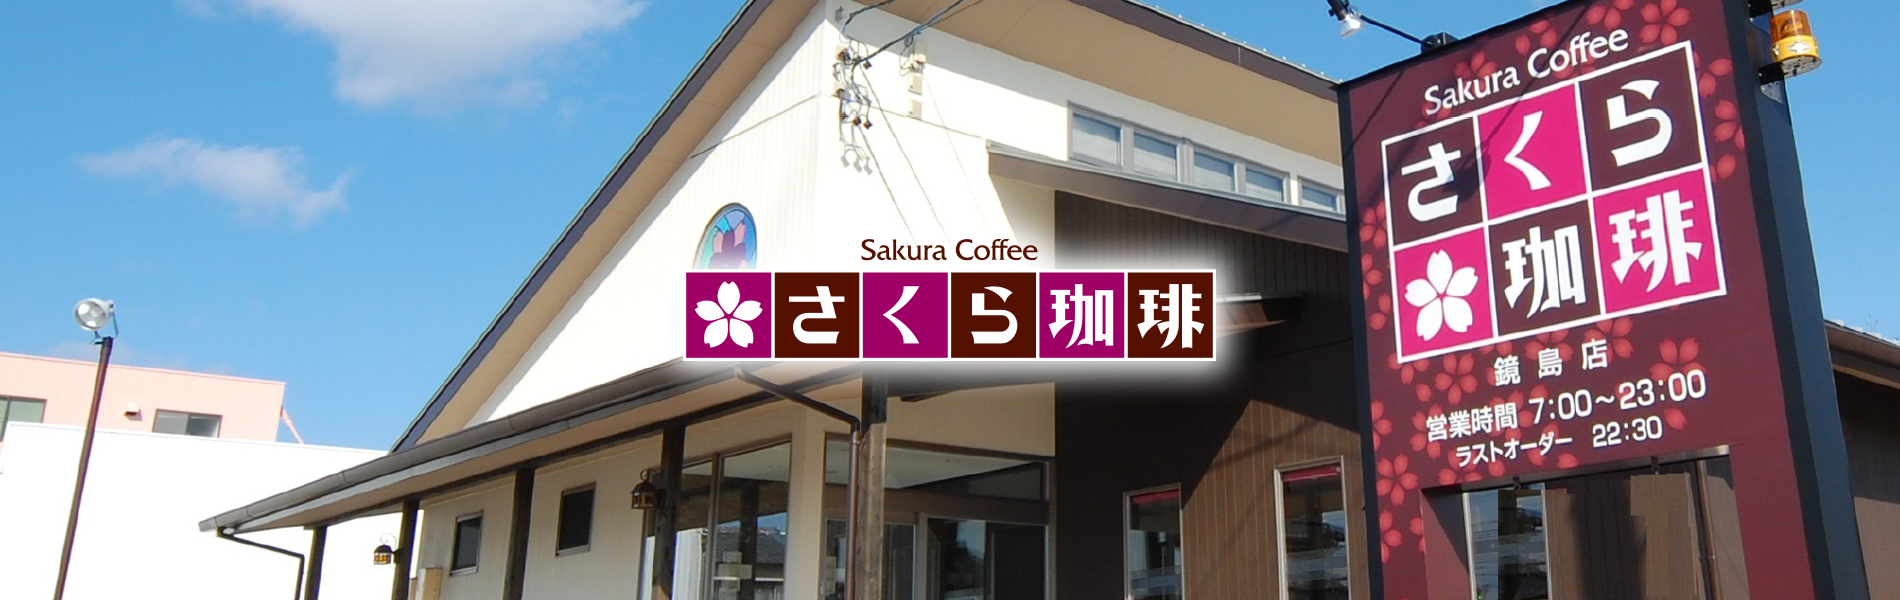 さくら珈琲、岐阜市鏡島店、自慢のコーヒーと美味しい食事のカフェ